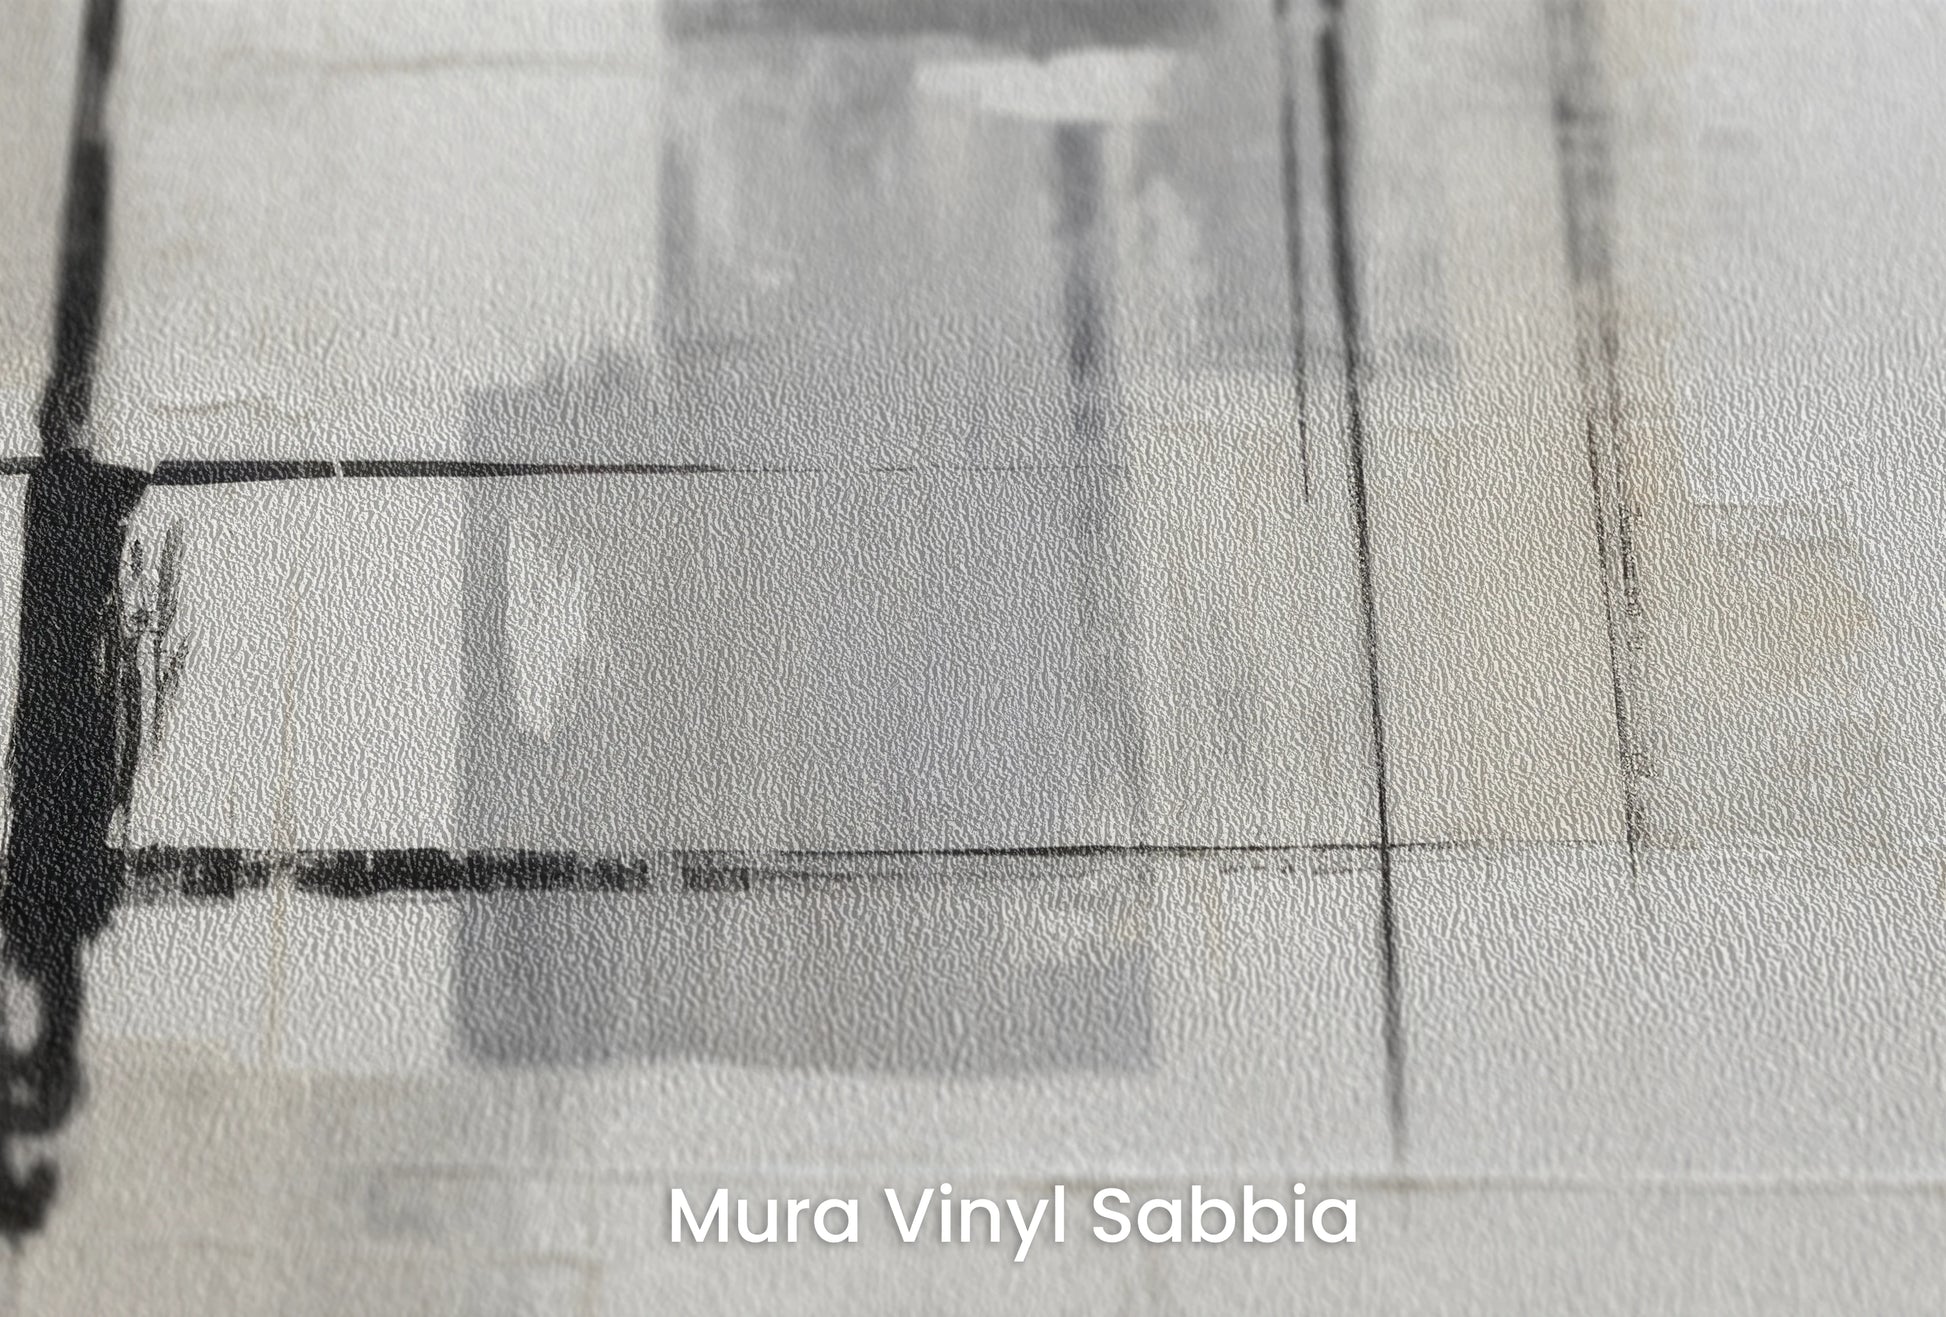 Zbliżenie na artystyczną fototapetę o nazwie Dynamic Clarity na podłożu Mura Vinyl Sabbia struktura grubego ziarna piasku.